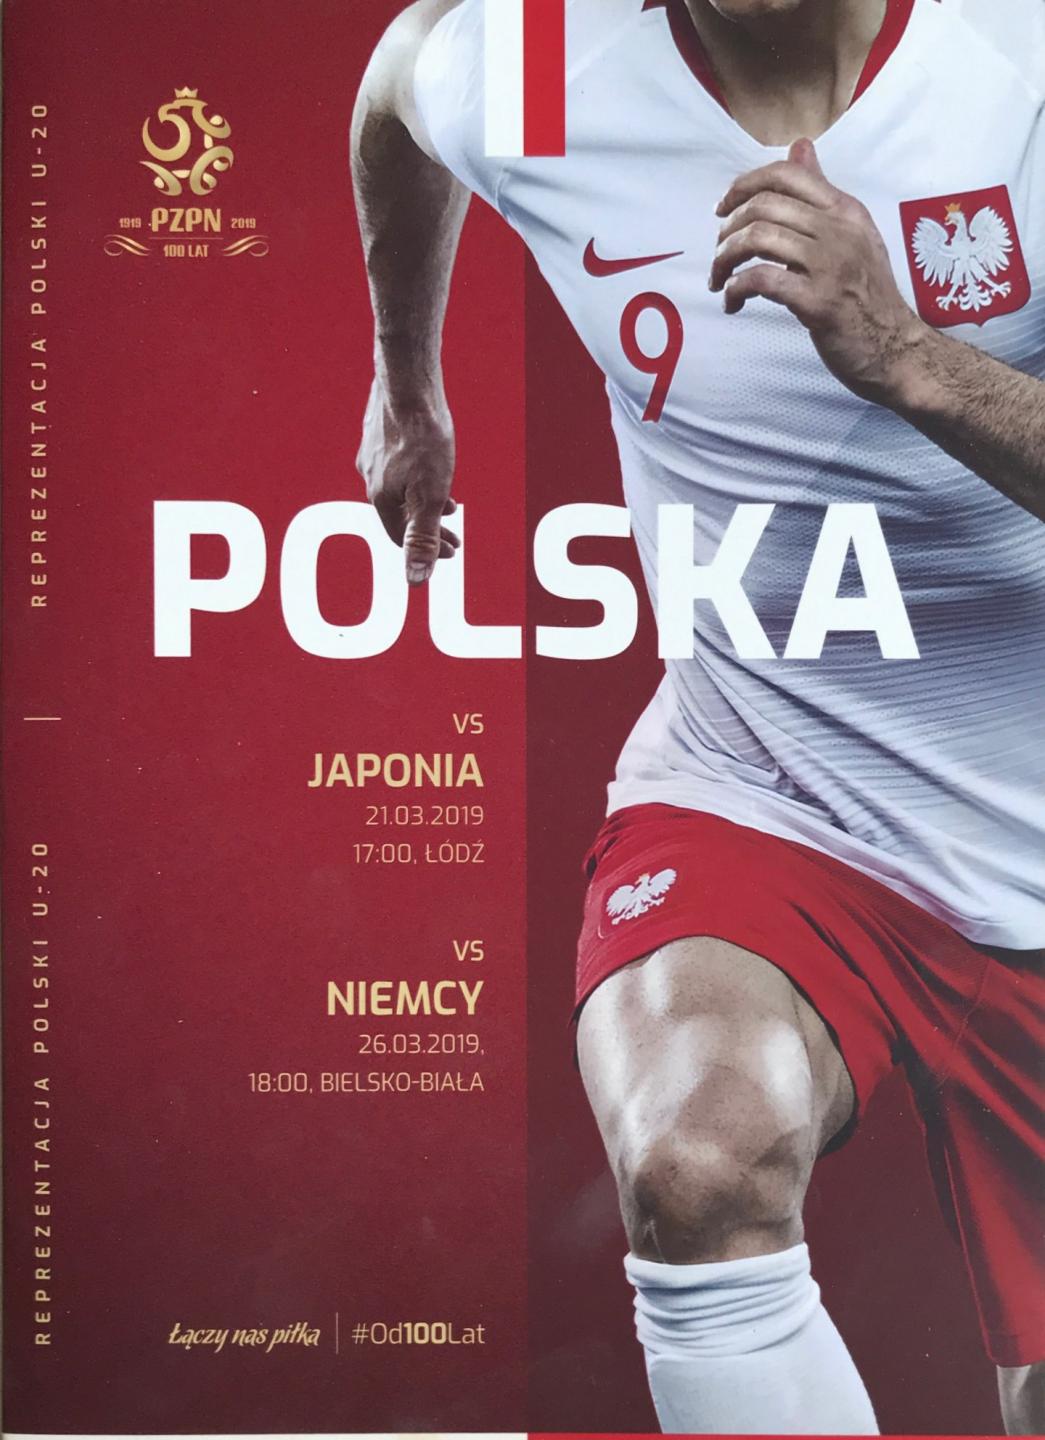 Program meczowy Polska U20 - Japonia U20 4:1 (21.03.2019) i Polska U20 - Niemcy U20 0:2 (26.03.2019) .